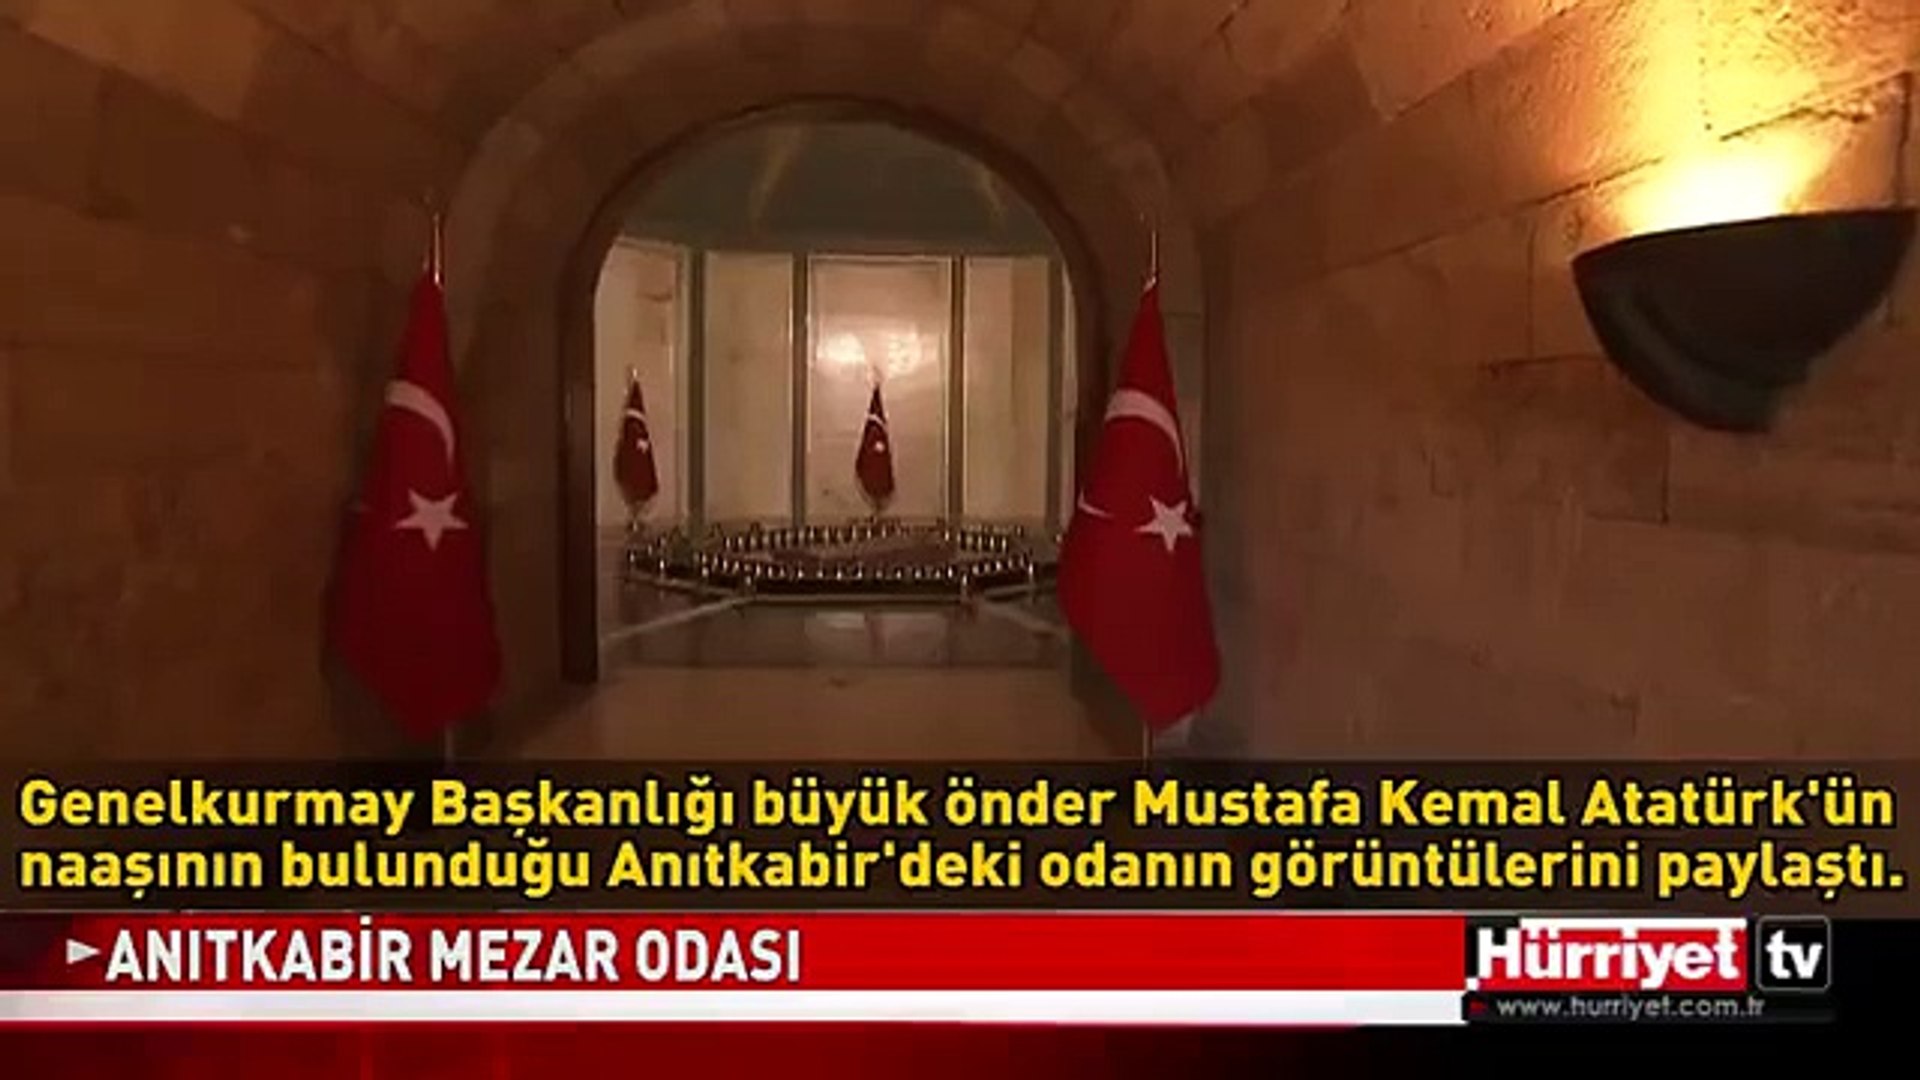 Atatürk'ün Anıtkabir'deki mezar sanduka odası - Dailymotion Video